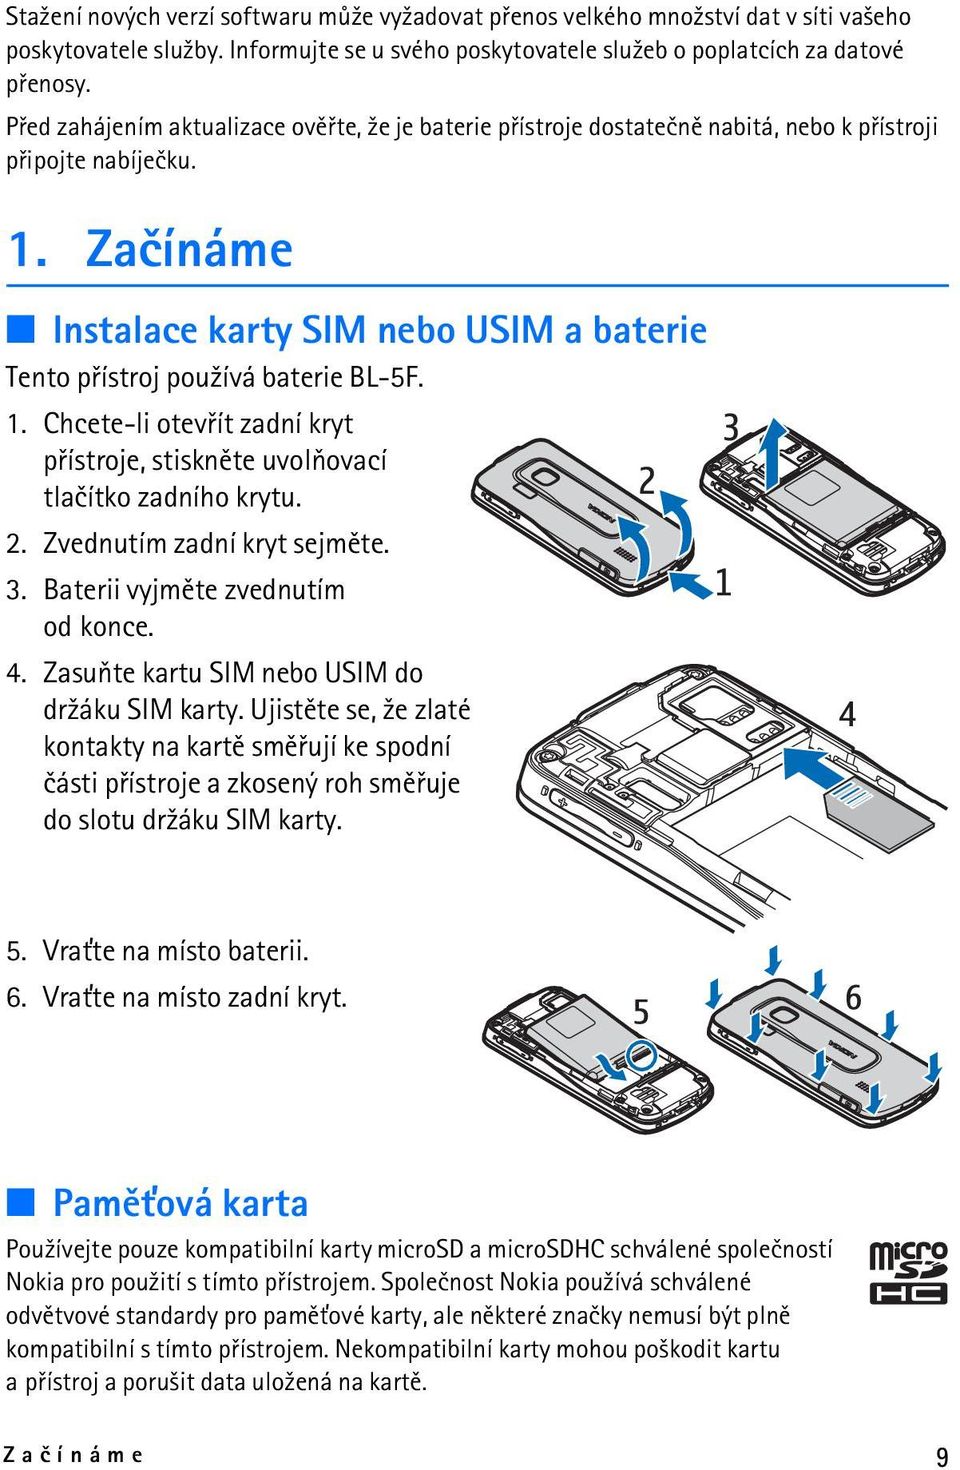 Zaèínáme Instalace karty SIM nebo USIM a baterie Tento pøístroj pou¾ívá baterie BL-5F. 1. Chcete-li otevøít zadní kryt pøístroje, stisknìte uvolòovací tlaèítko zadního krytu. 2.